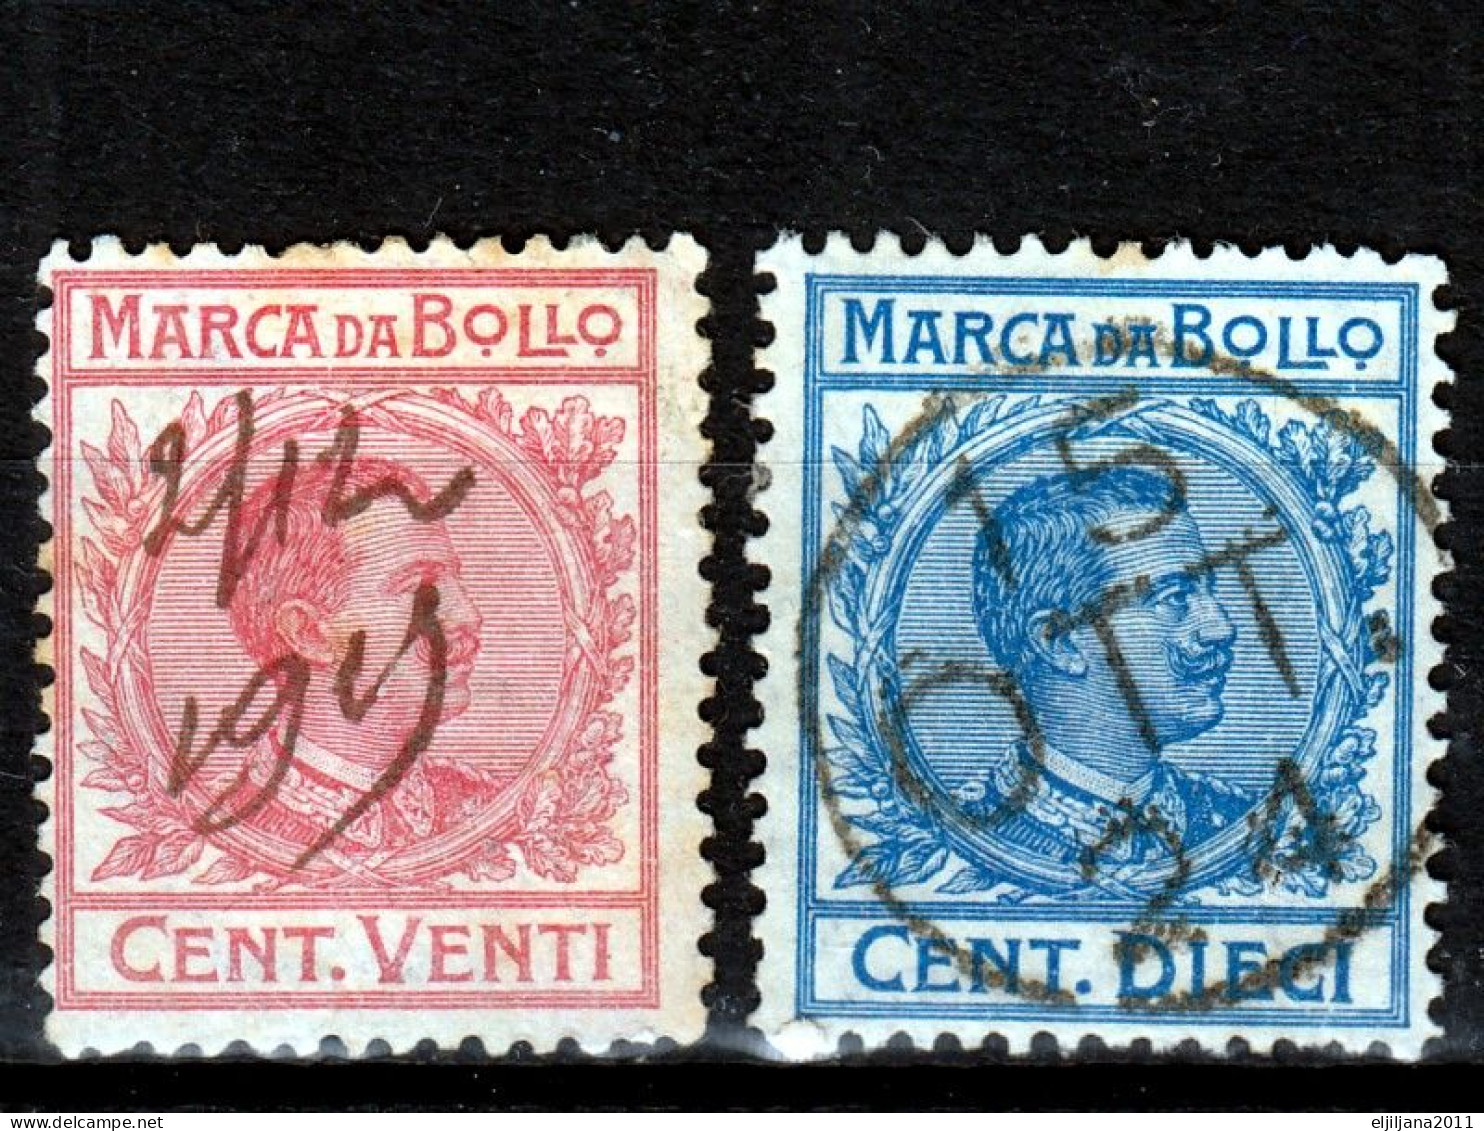 ⁕ ITALY ⁕ Marca da bollo / Tassa di bollo ⁕ 21v old revenue stamps - see all scan